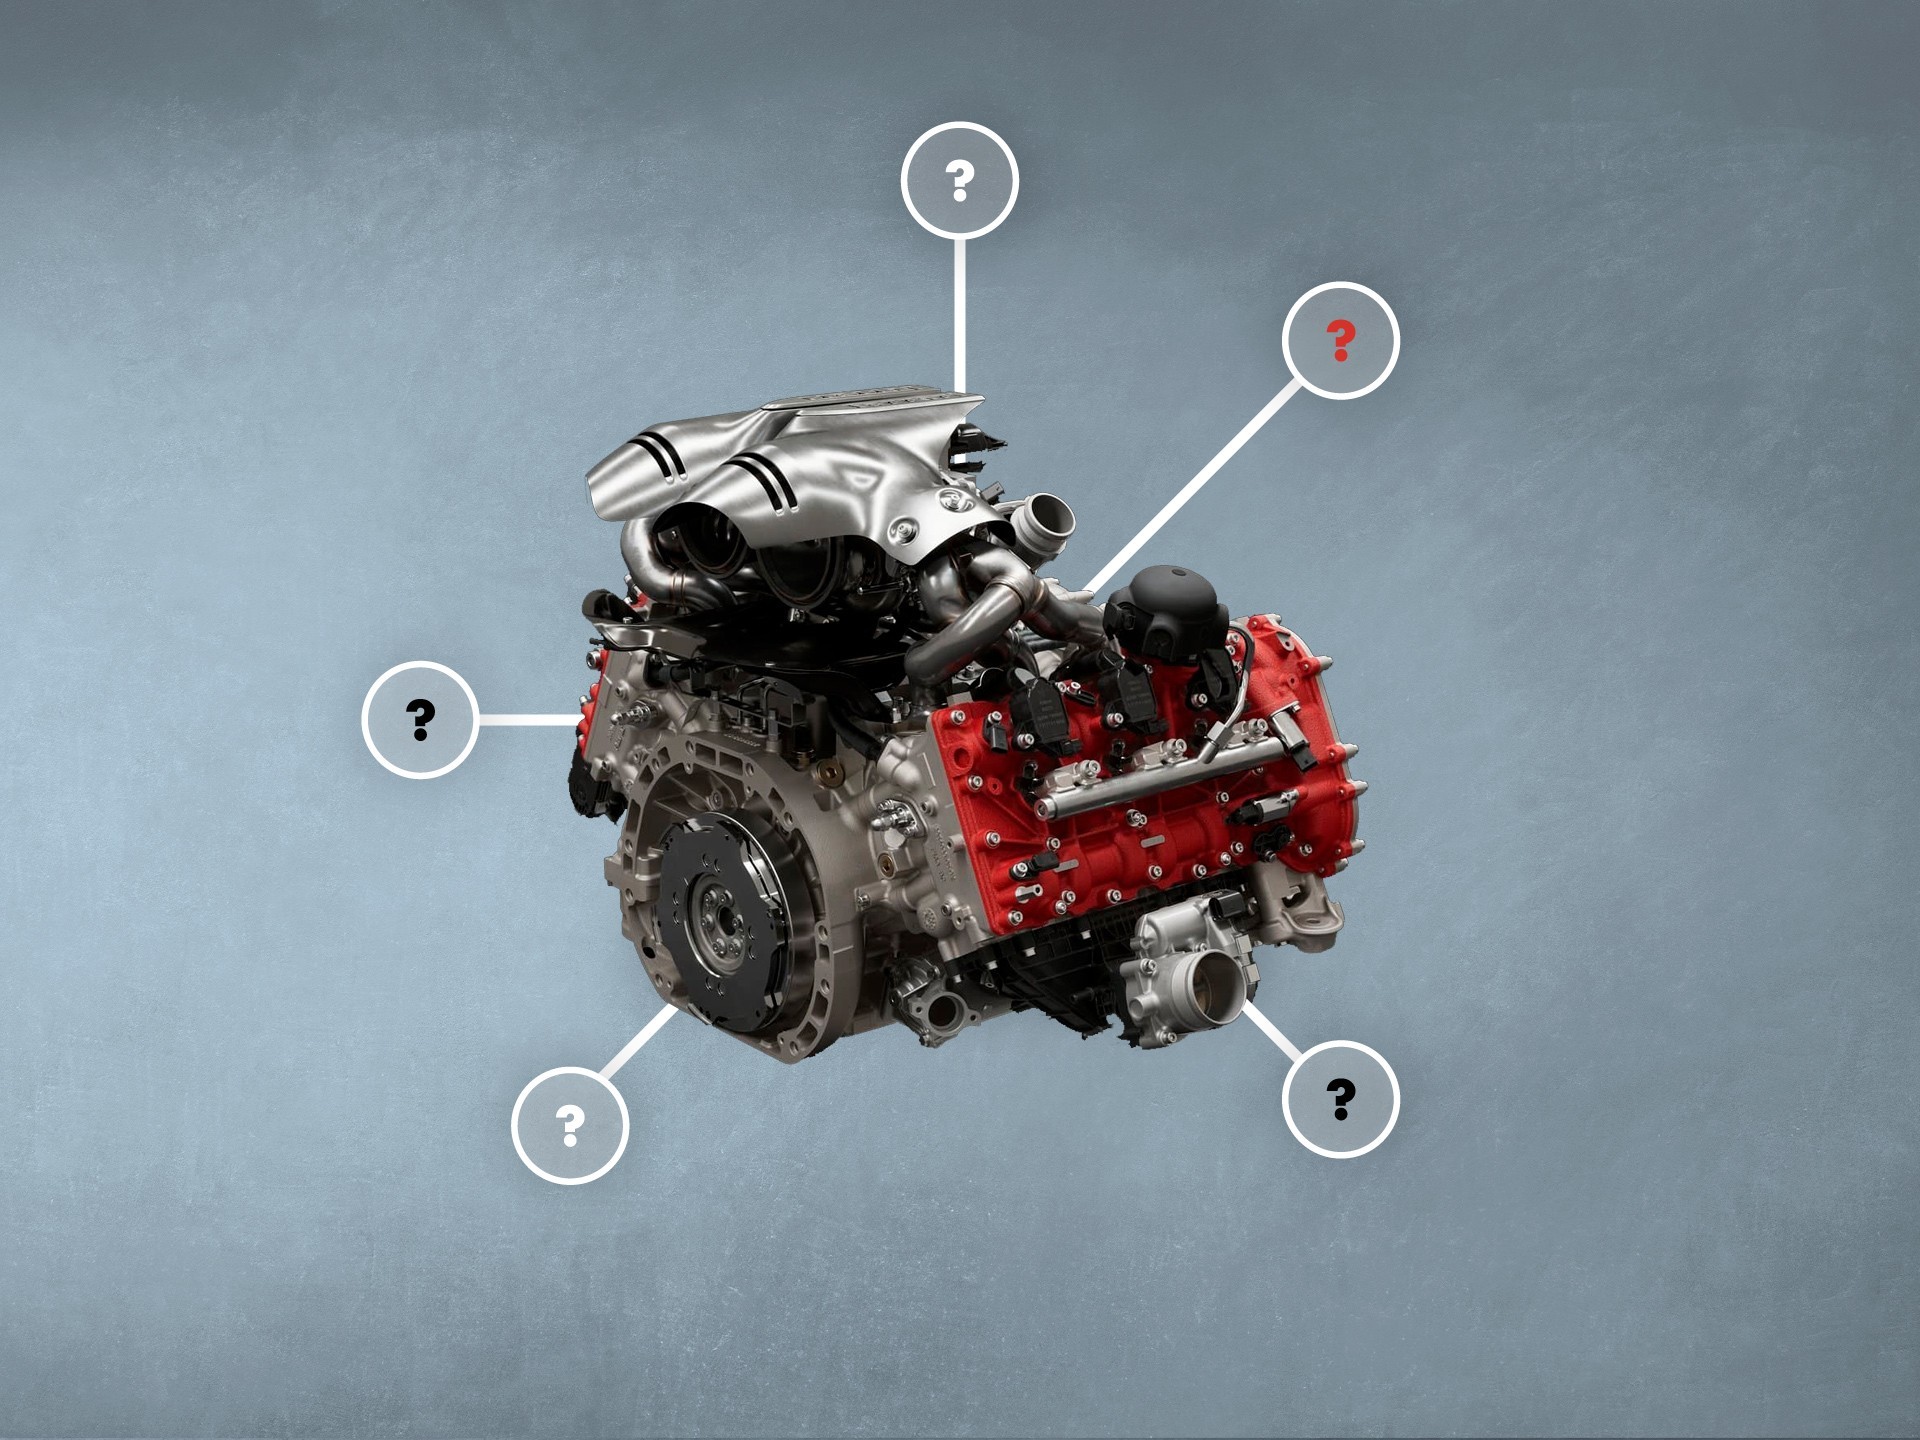 कारमध्ये V6 इंजिन – तुम्हाला ते कार, ट्रक आणि SUV मध्ये मिळेल